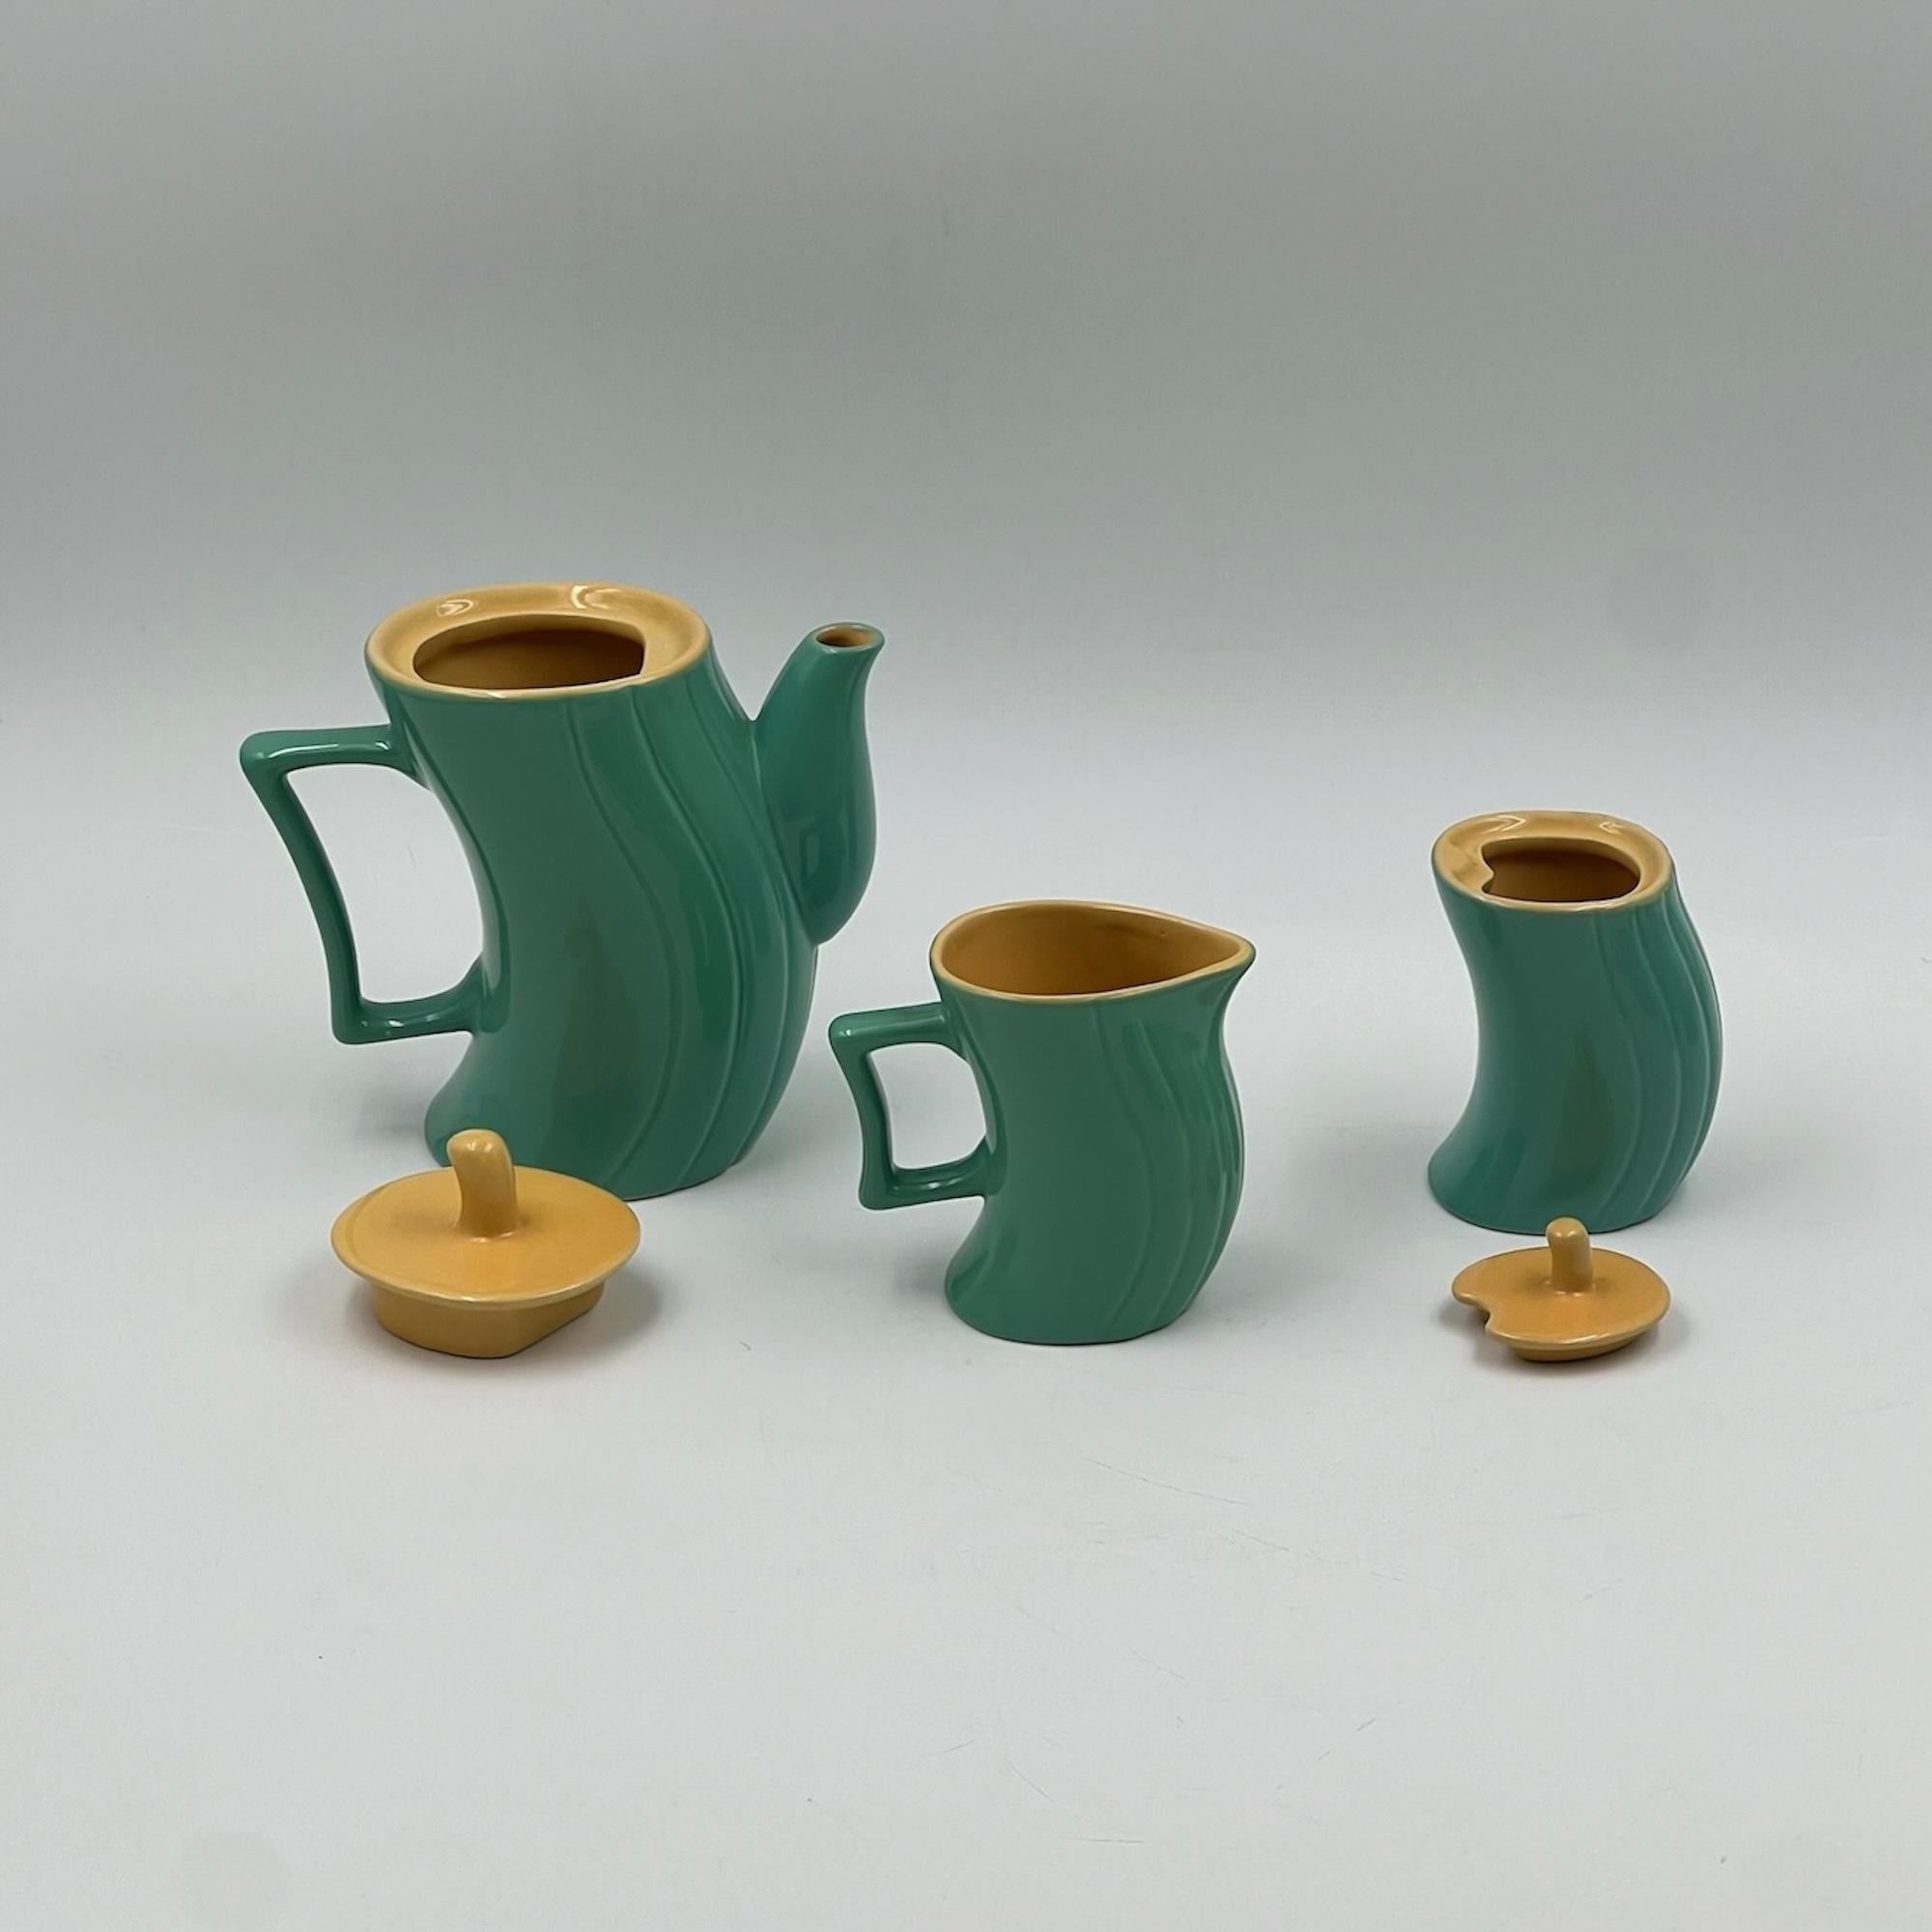 Late 20th Century Vintage Memphis Naj Oleari Ceramic Tea Set by Massimo Iosa Ghini - 1980s For Sale